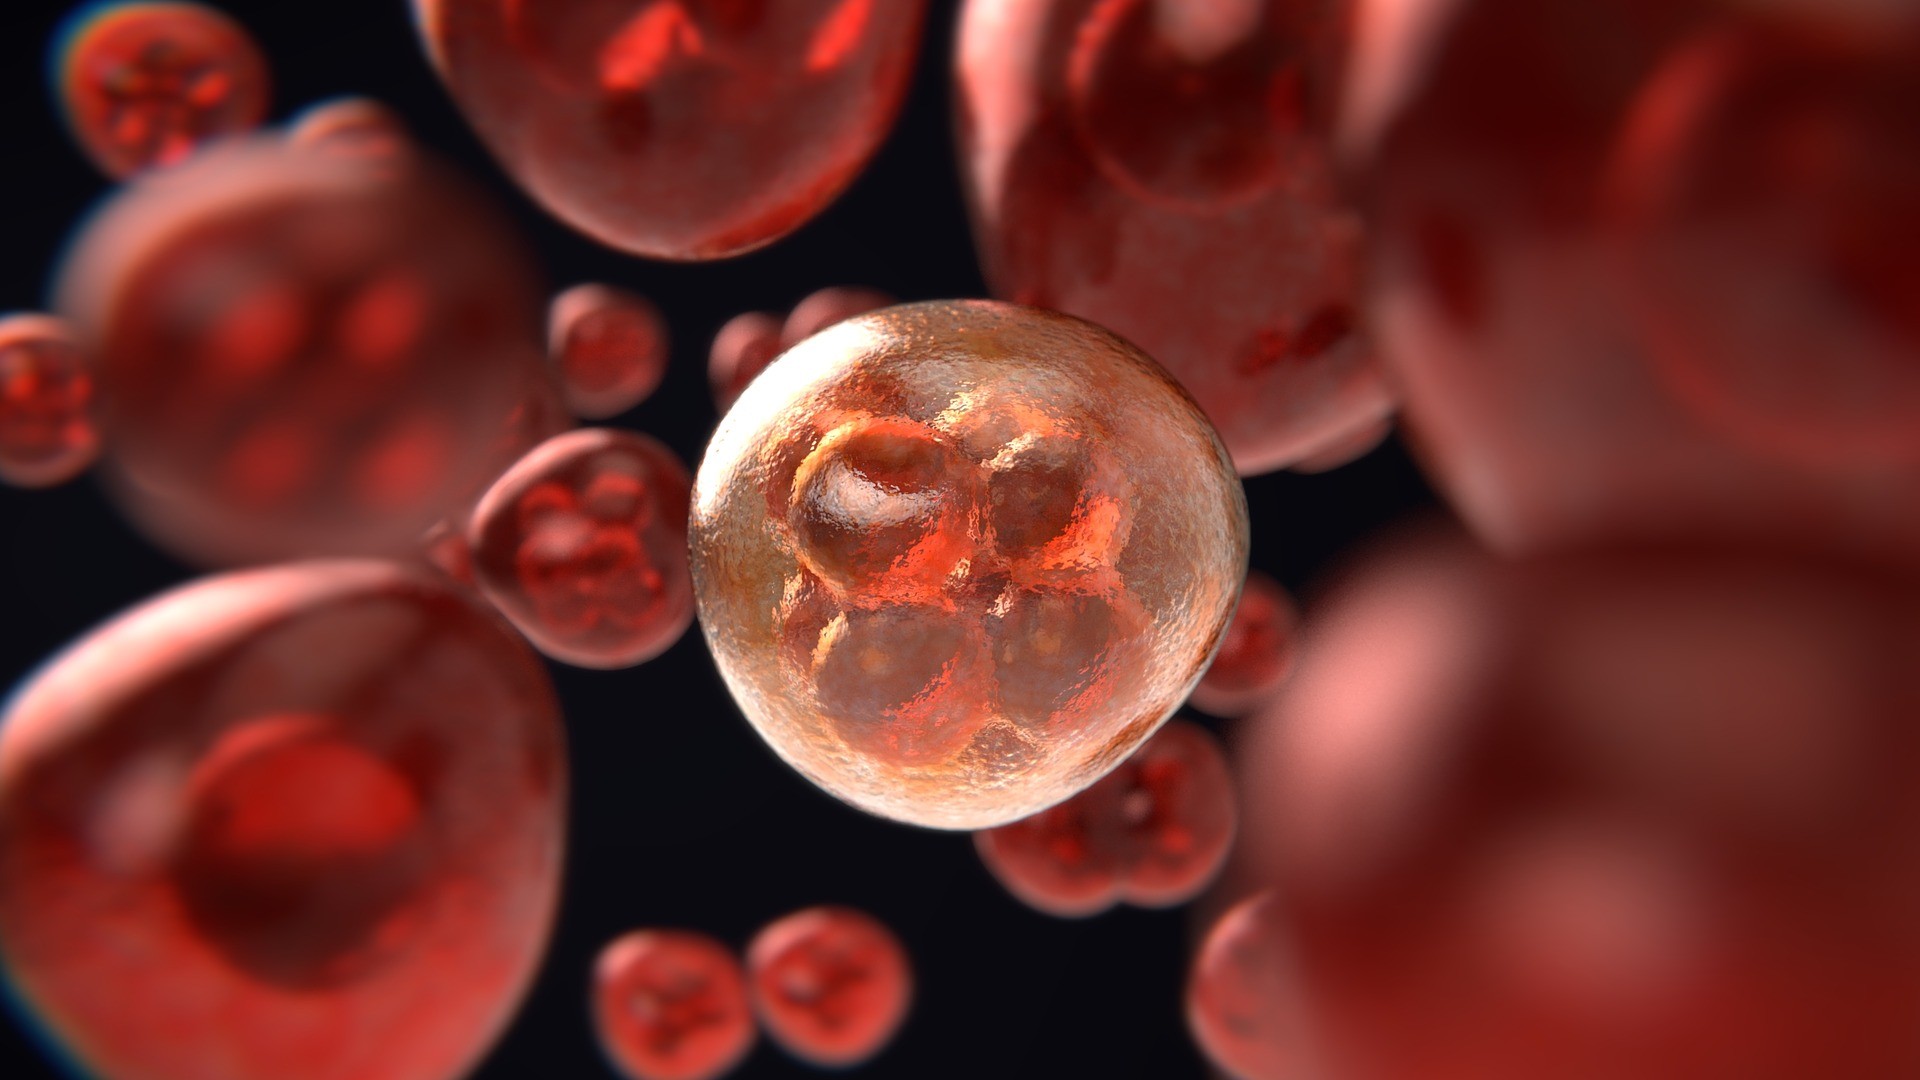 Brasilianische Wissenschaftler verwenden „künstliche Zellen“ in einem Test zur Krebsbekämpfung